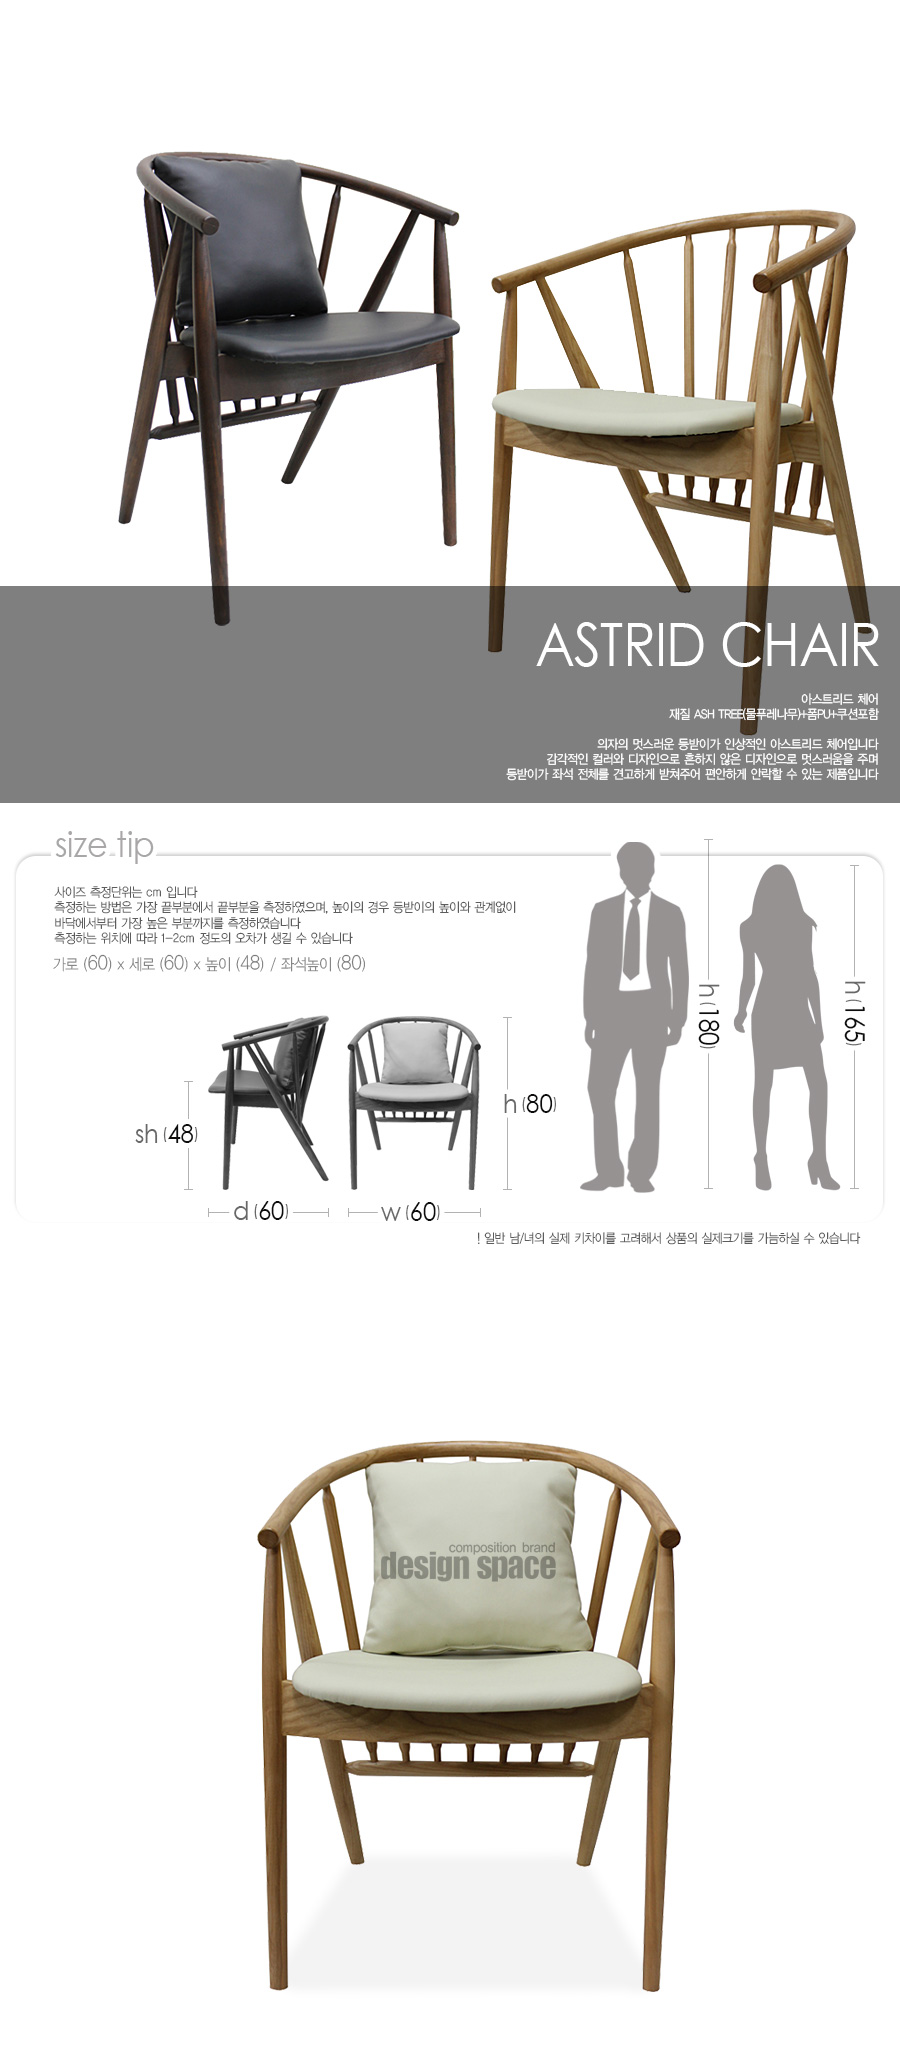 astrid-chair_01.jpg